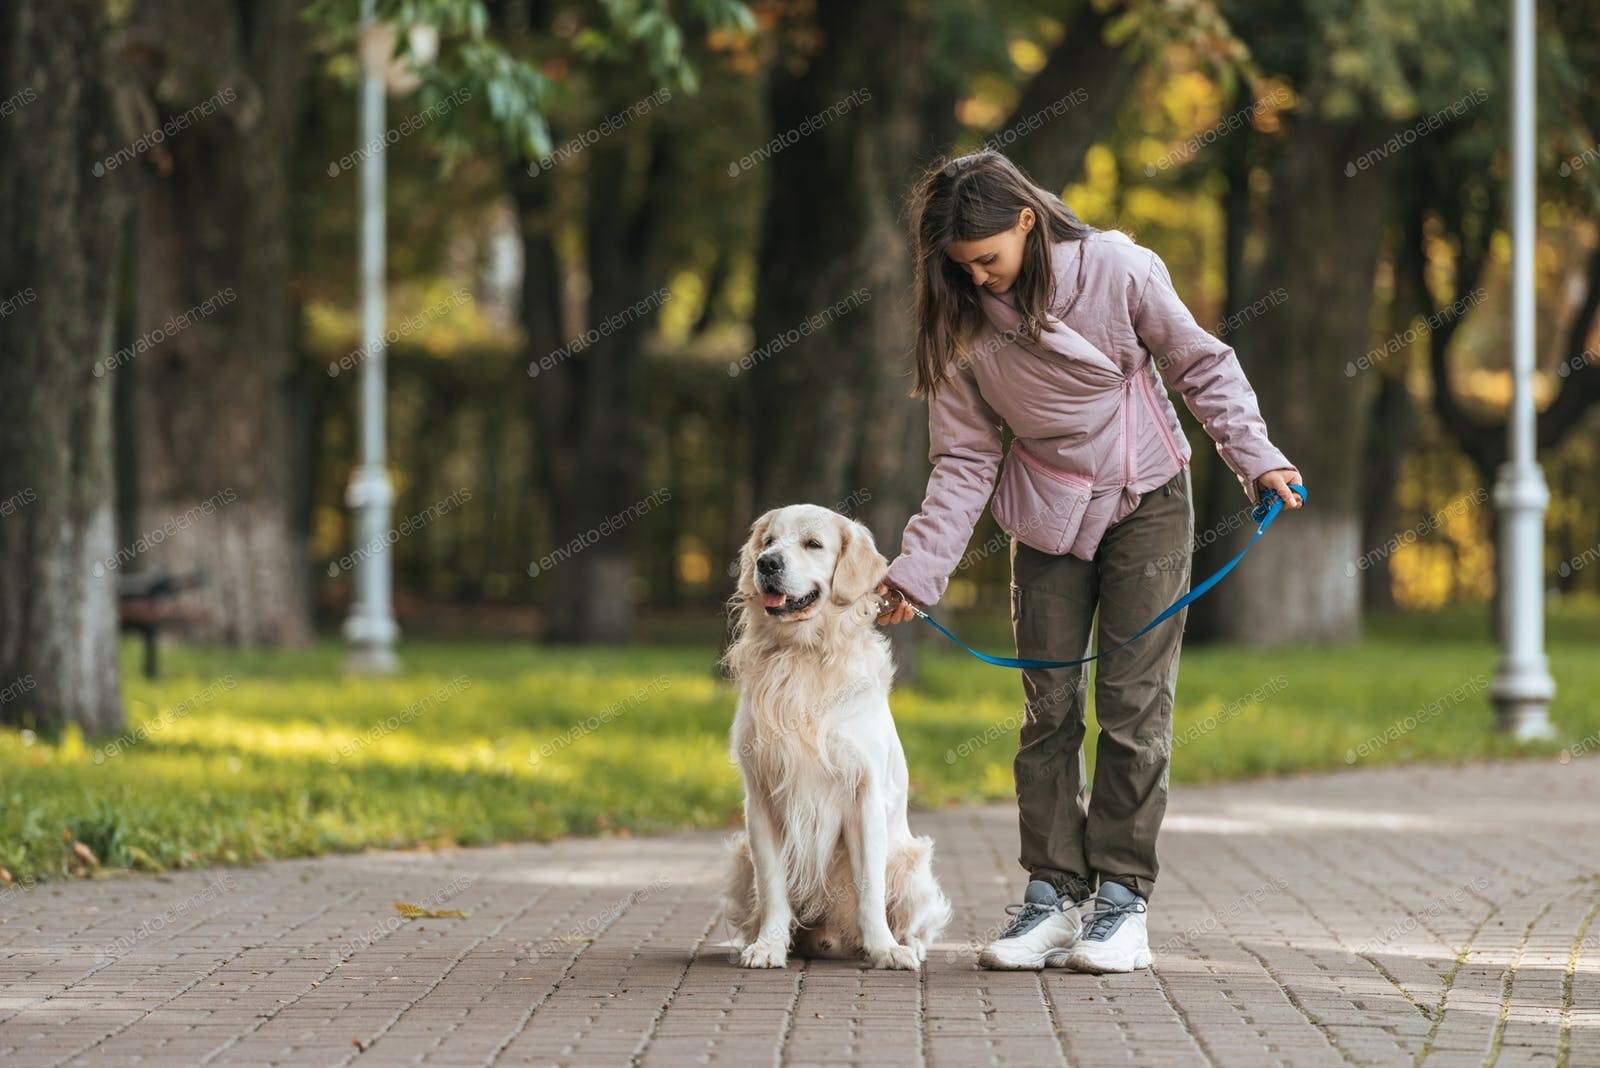 Можно гулять с собакой в парке. Щенок на прогулке. Прогулка с собакой. Прогулка с собакой в парке. Девушка гуляет с собакой в парке.